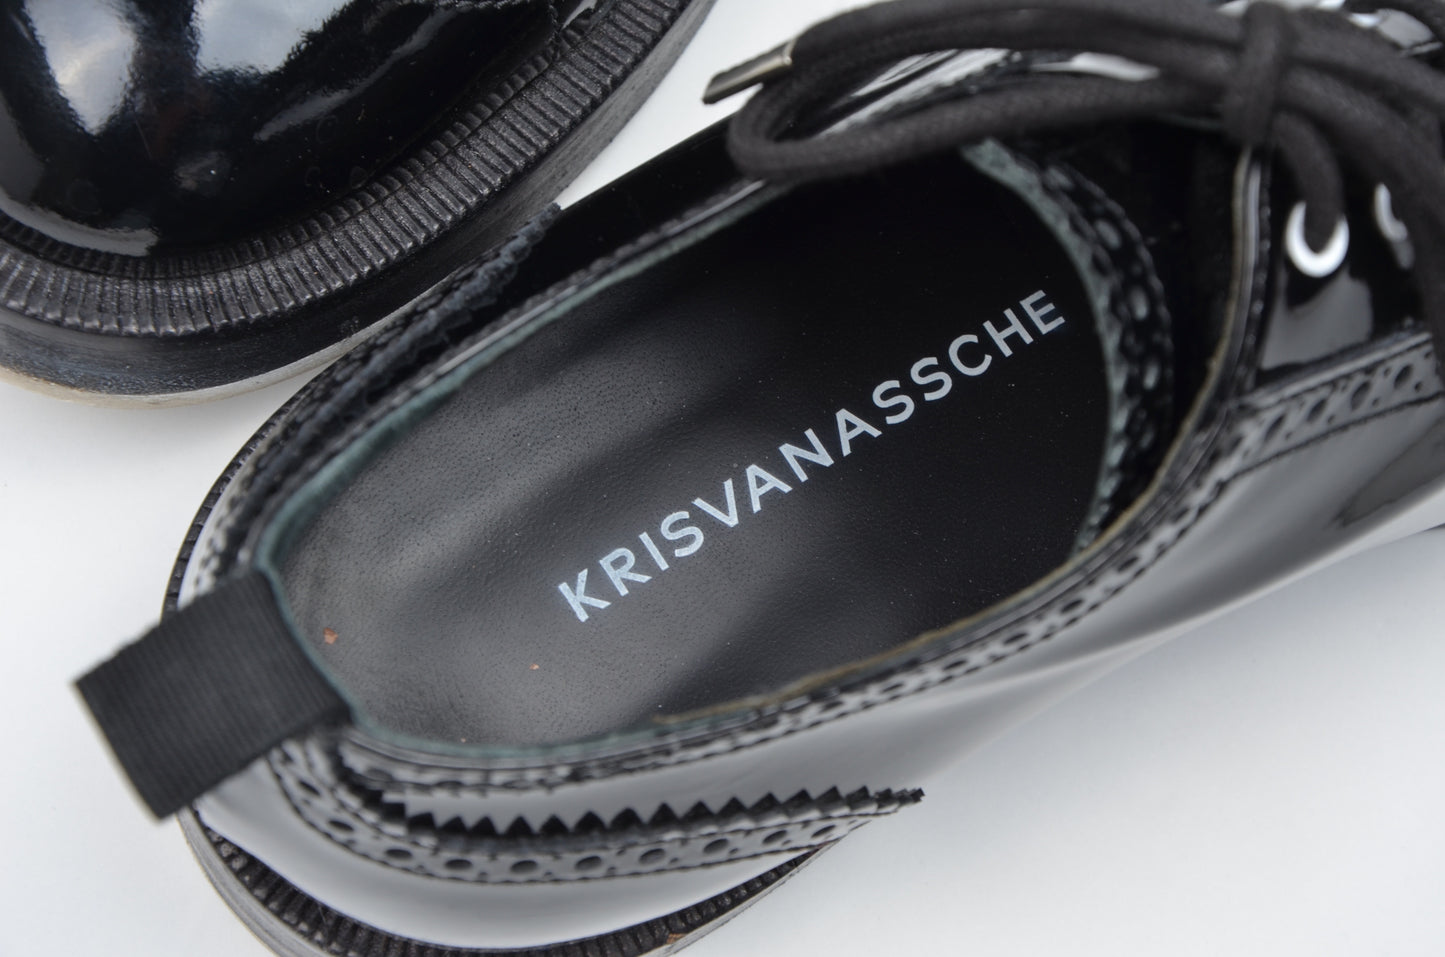 Kris van Assche Patent Leather Shoes Brogues Plus Size 40 - Black